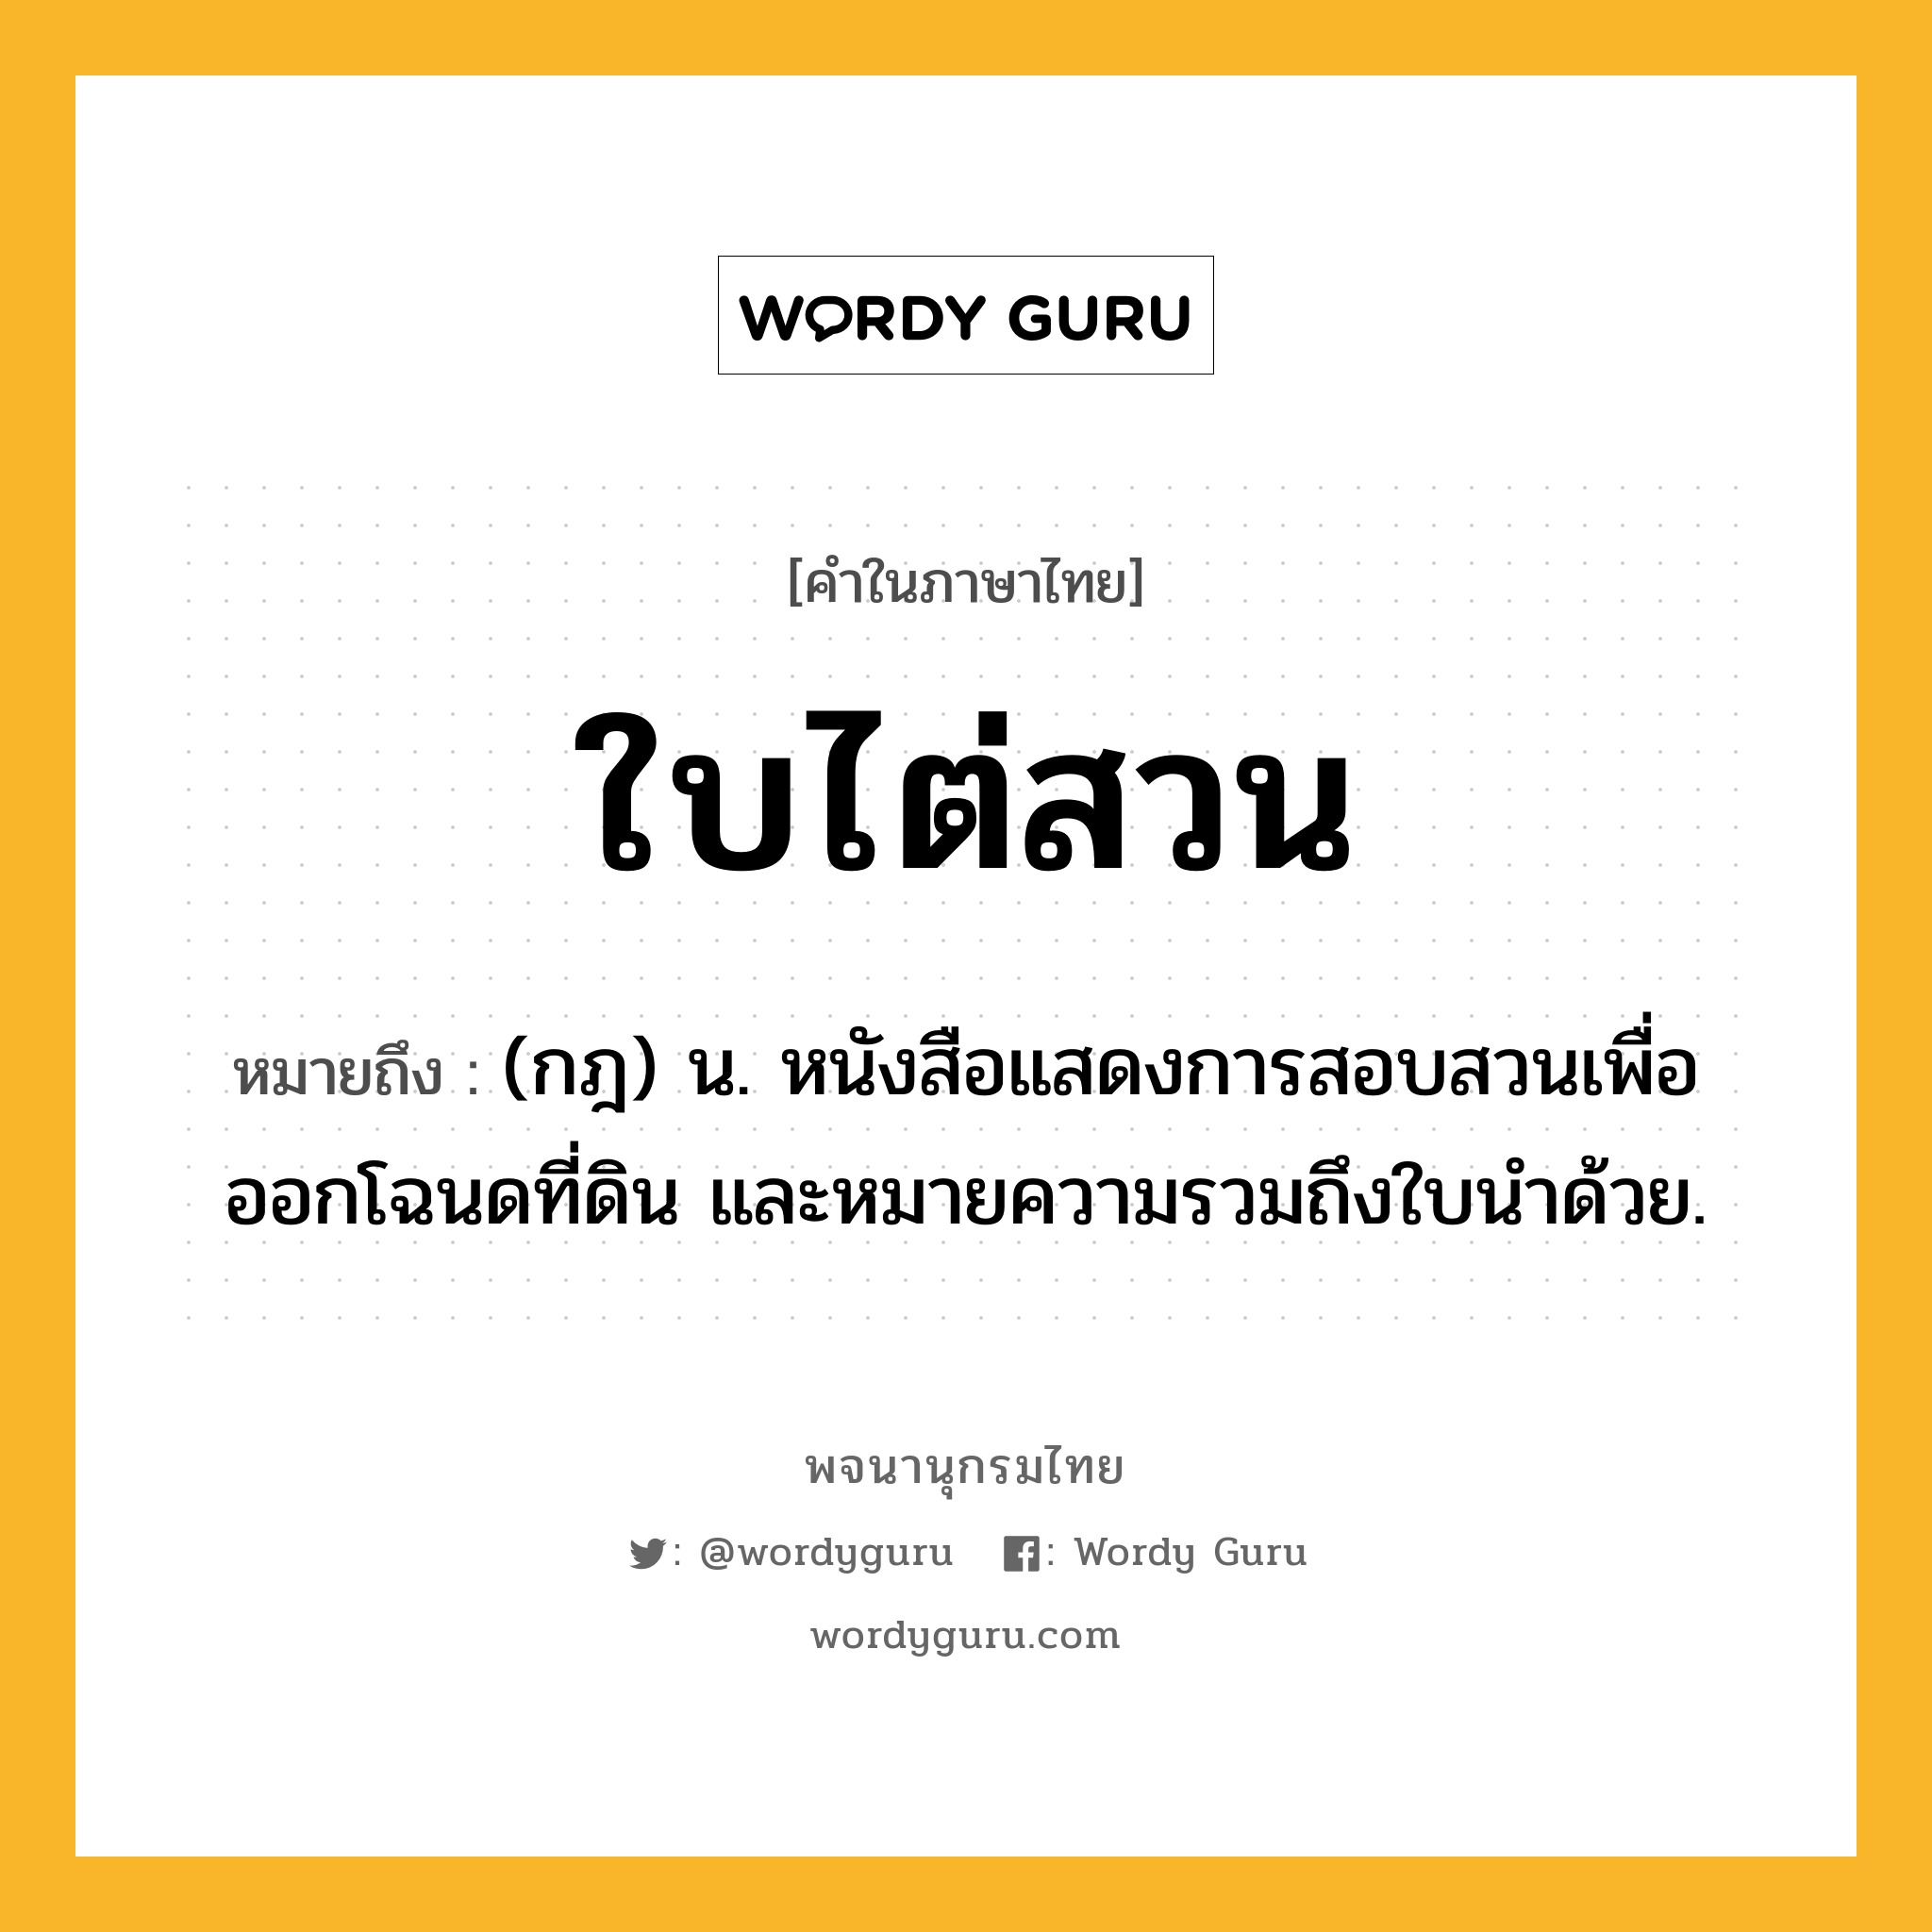 ใบไต่สวน ความหมาย หมายถึงอะไร?, คำในภาษาไทย ใบไต่สวน หมายถึง (กฎ) น. หนังสือแสดงการสอบสวนเพื่อออกโฉนดที่ดิน และหมายความรวมถึงใบนำด้วย.